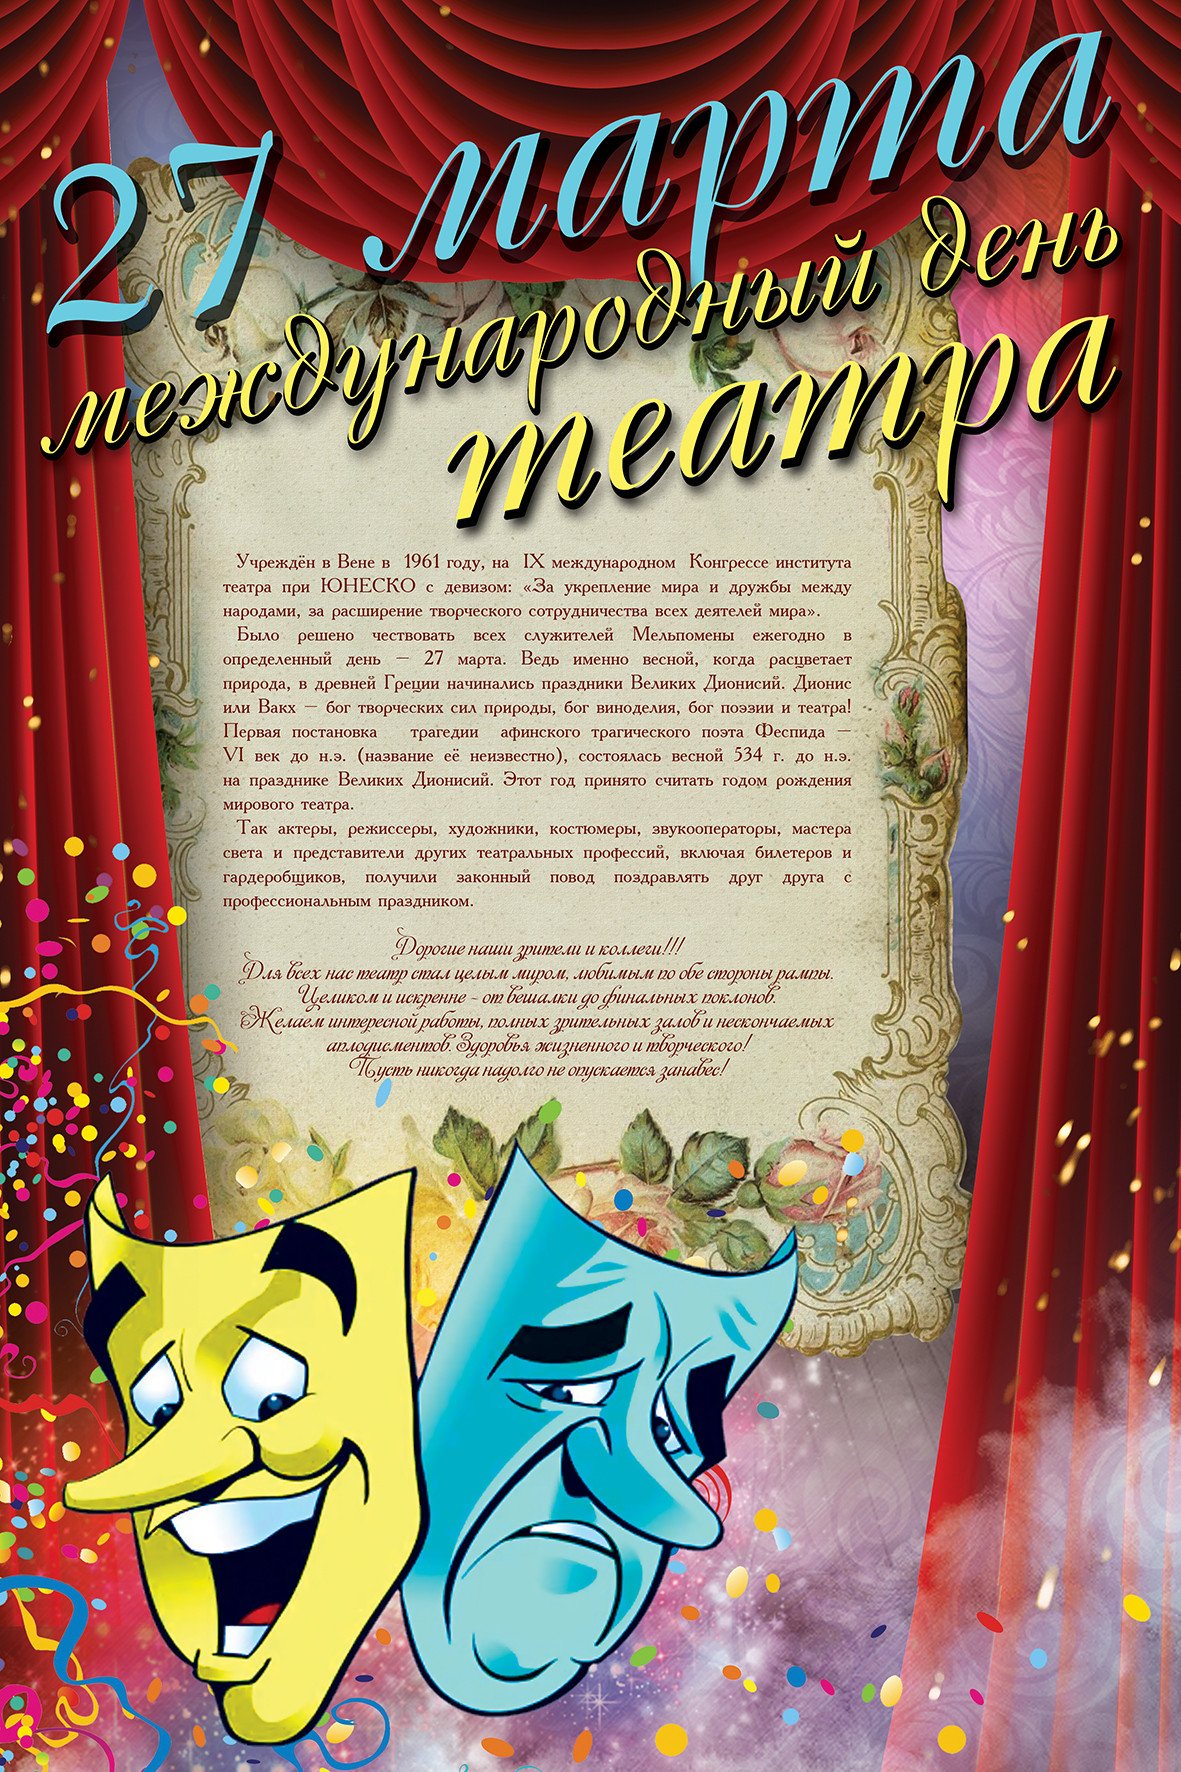 Всемирный день театра - открытки на WhatsApp, Viber, в Одноклассники